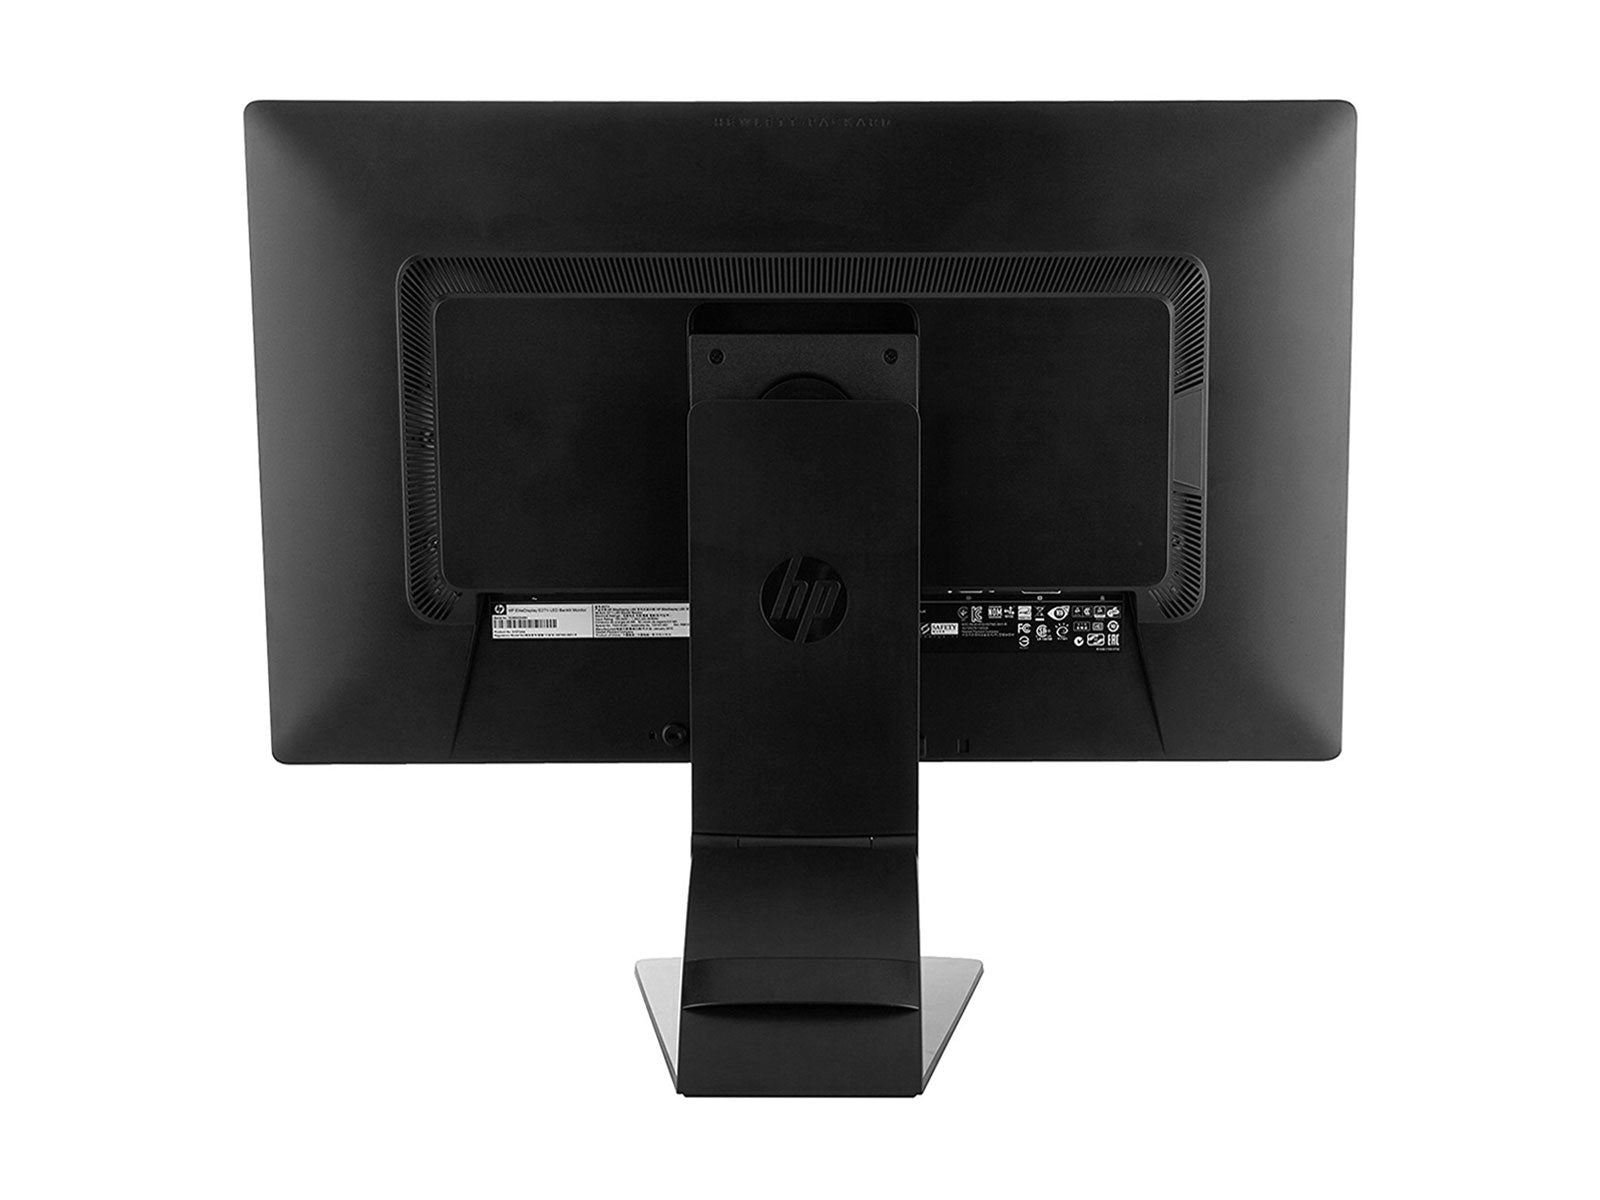 HP EliteDisplay e271i 27" FHD 1920 x 1080 LED Display Monitor (D7Z72A8#ABA)